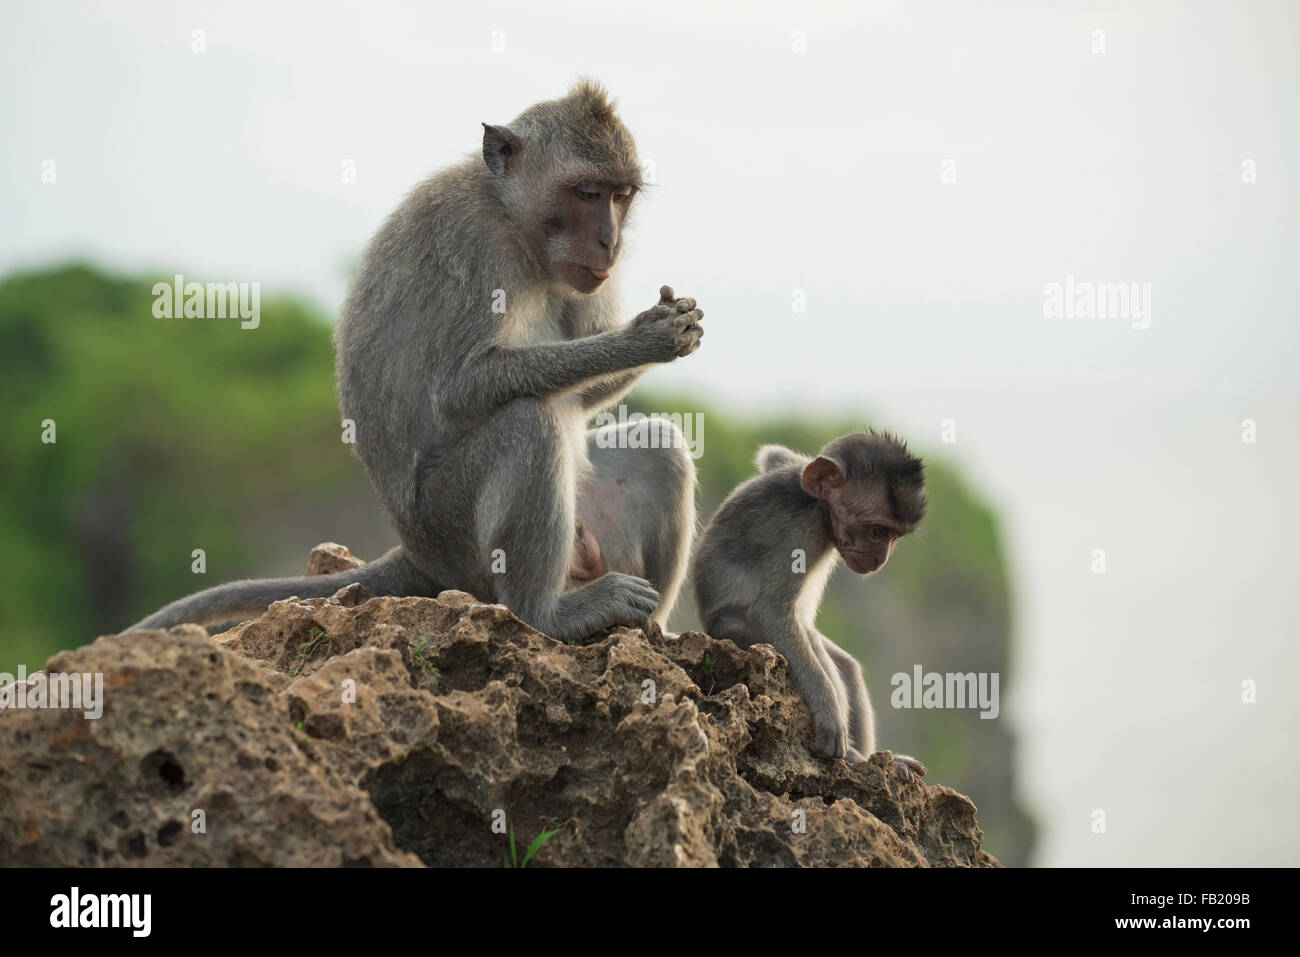 Tierwelt-Szene, wilde Affen, die auf Felsen in ihrem natürlichen Lebensraum mit Dschungel Natur Hintergrund sitzen. Stockfoto